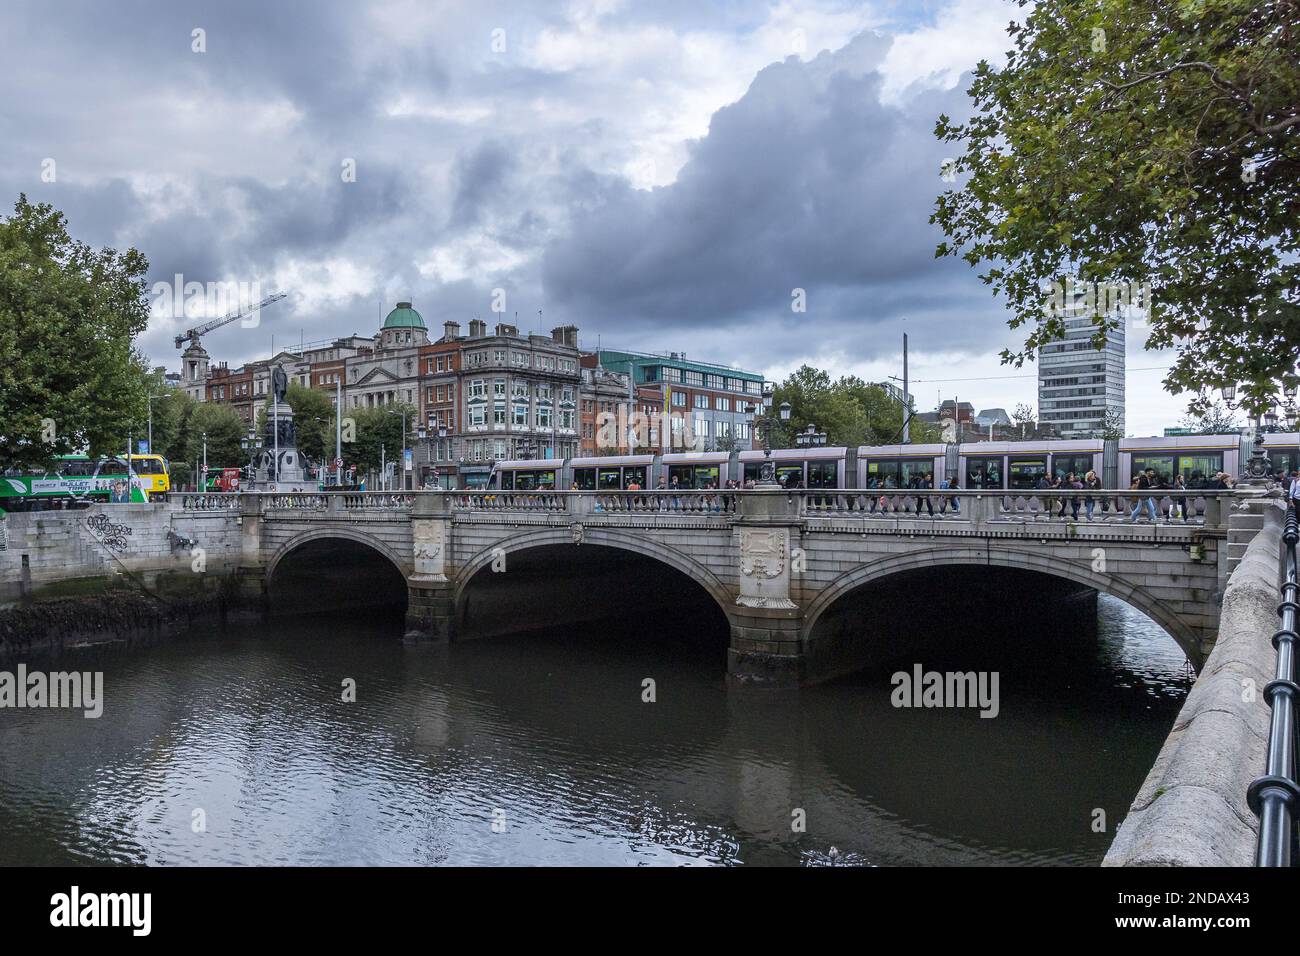 Dublin am Fluss liffey Stockfoto